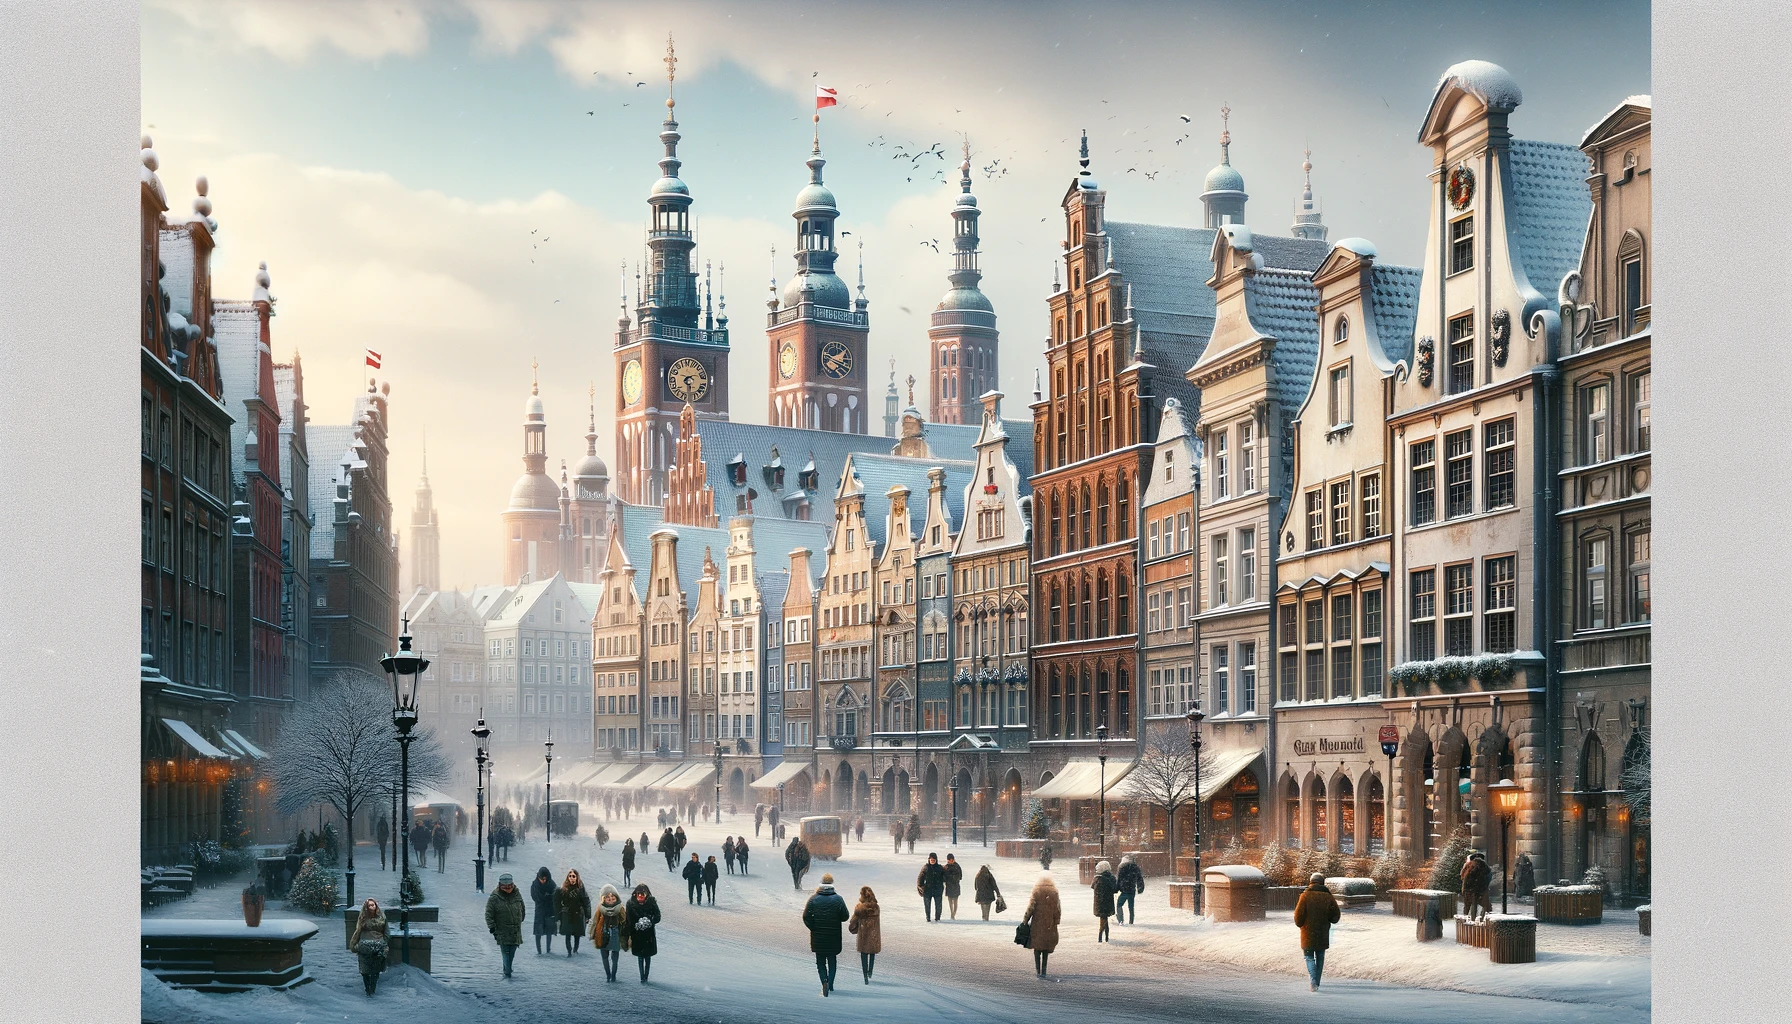 Zimowy krajobraz Gdańska z historycznymi budynkami